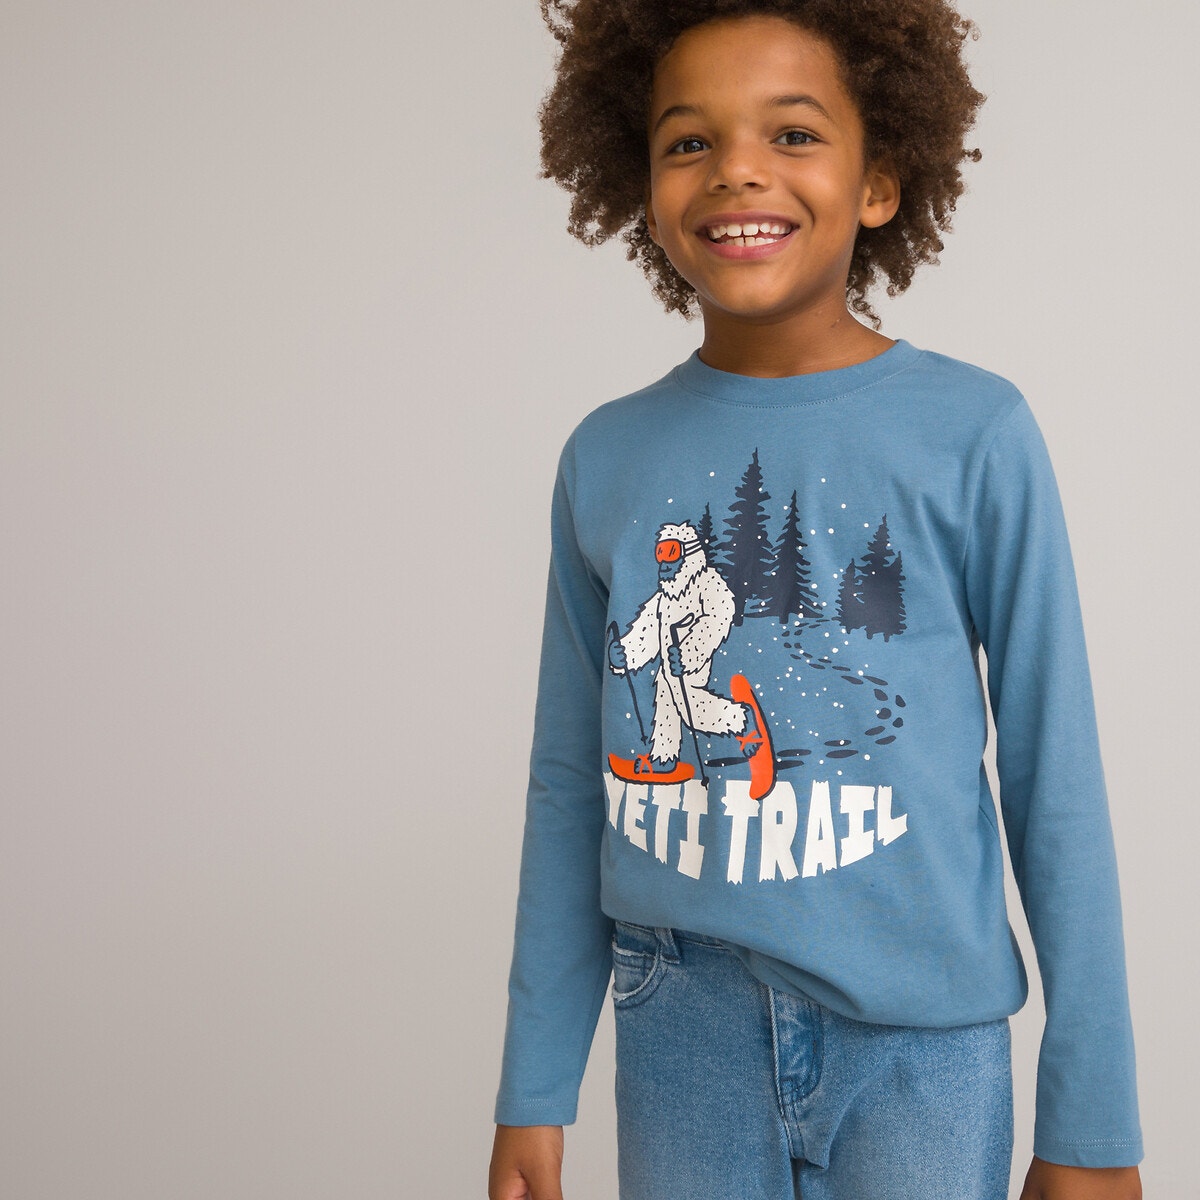 Μόδα > Παιδικά > Αγόρι > T-shirt, πόλο > Μακριά μανίκια Μακρυμάνικη μπλούζα με μοτίβο Γέτι